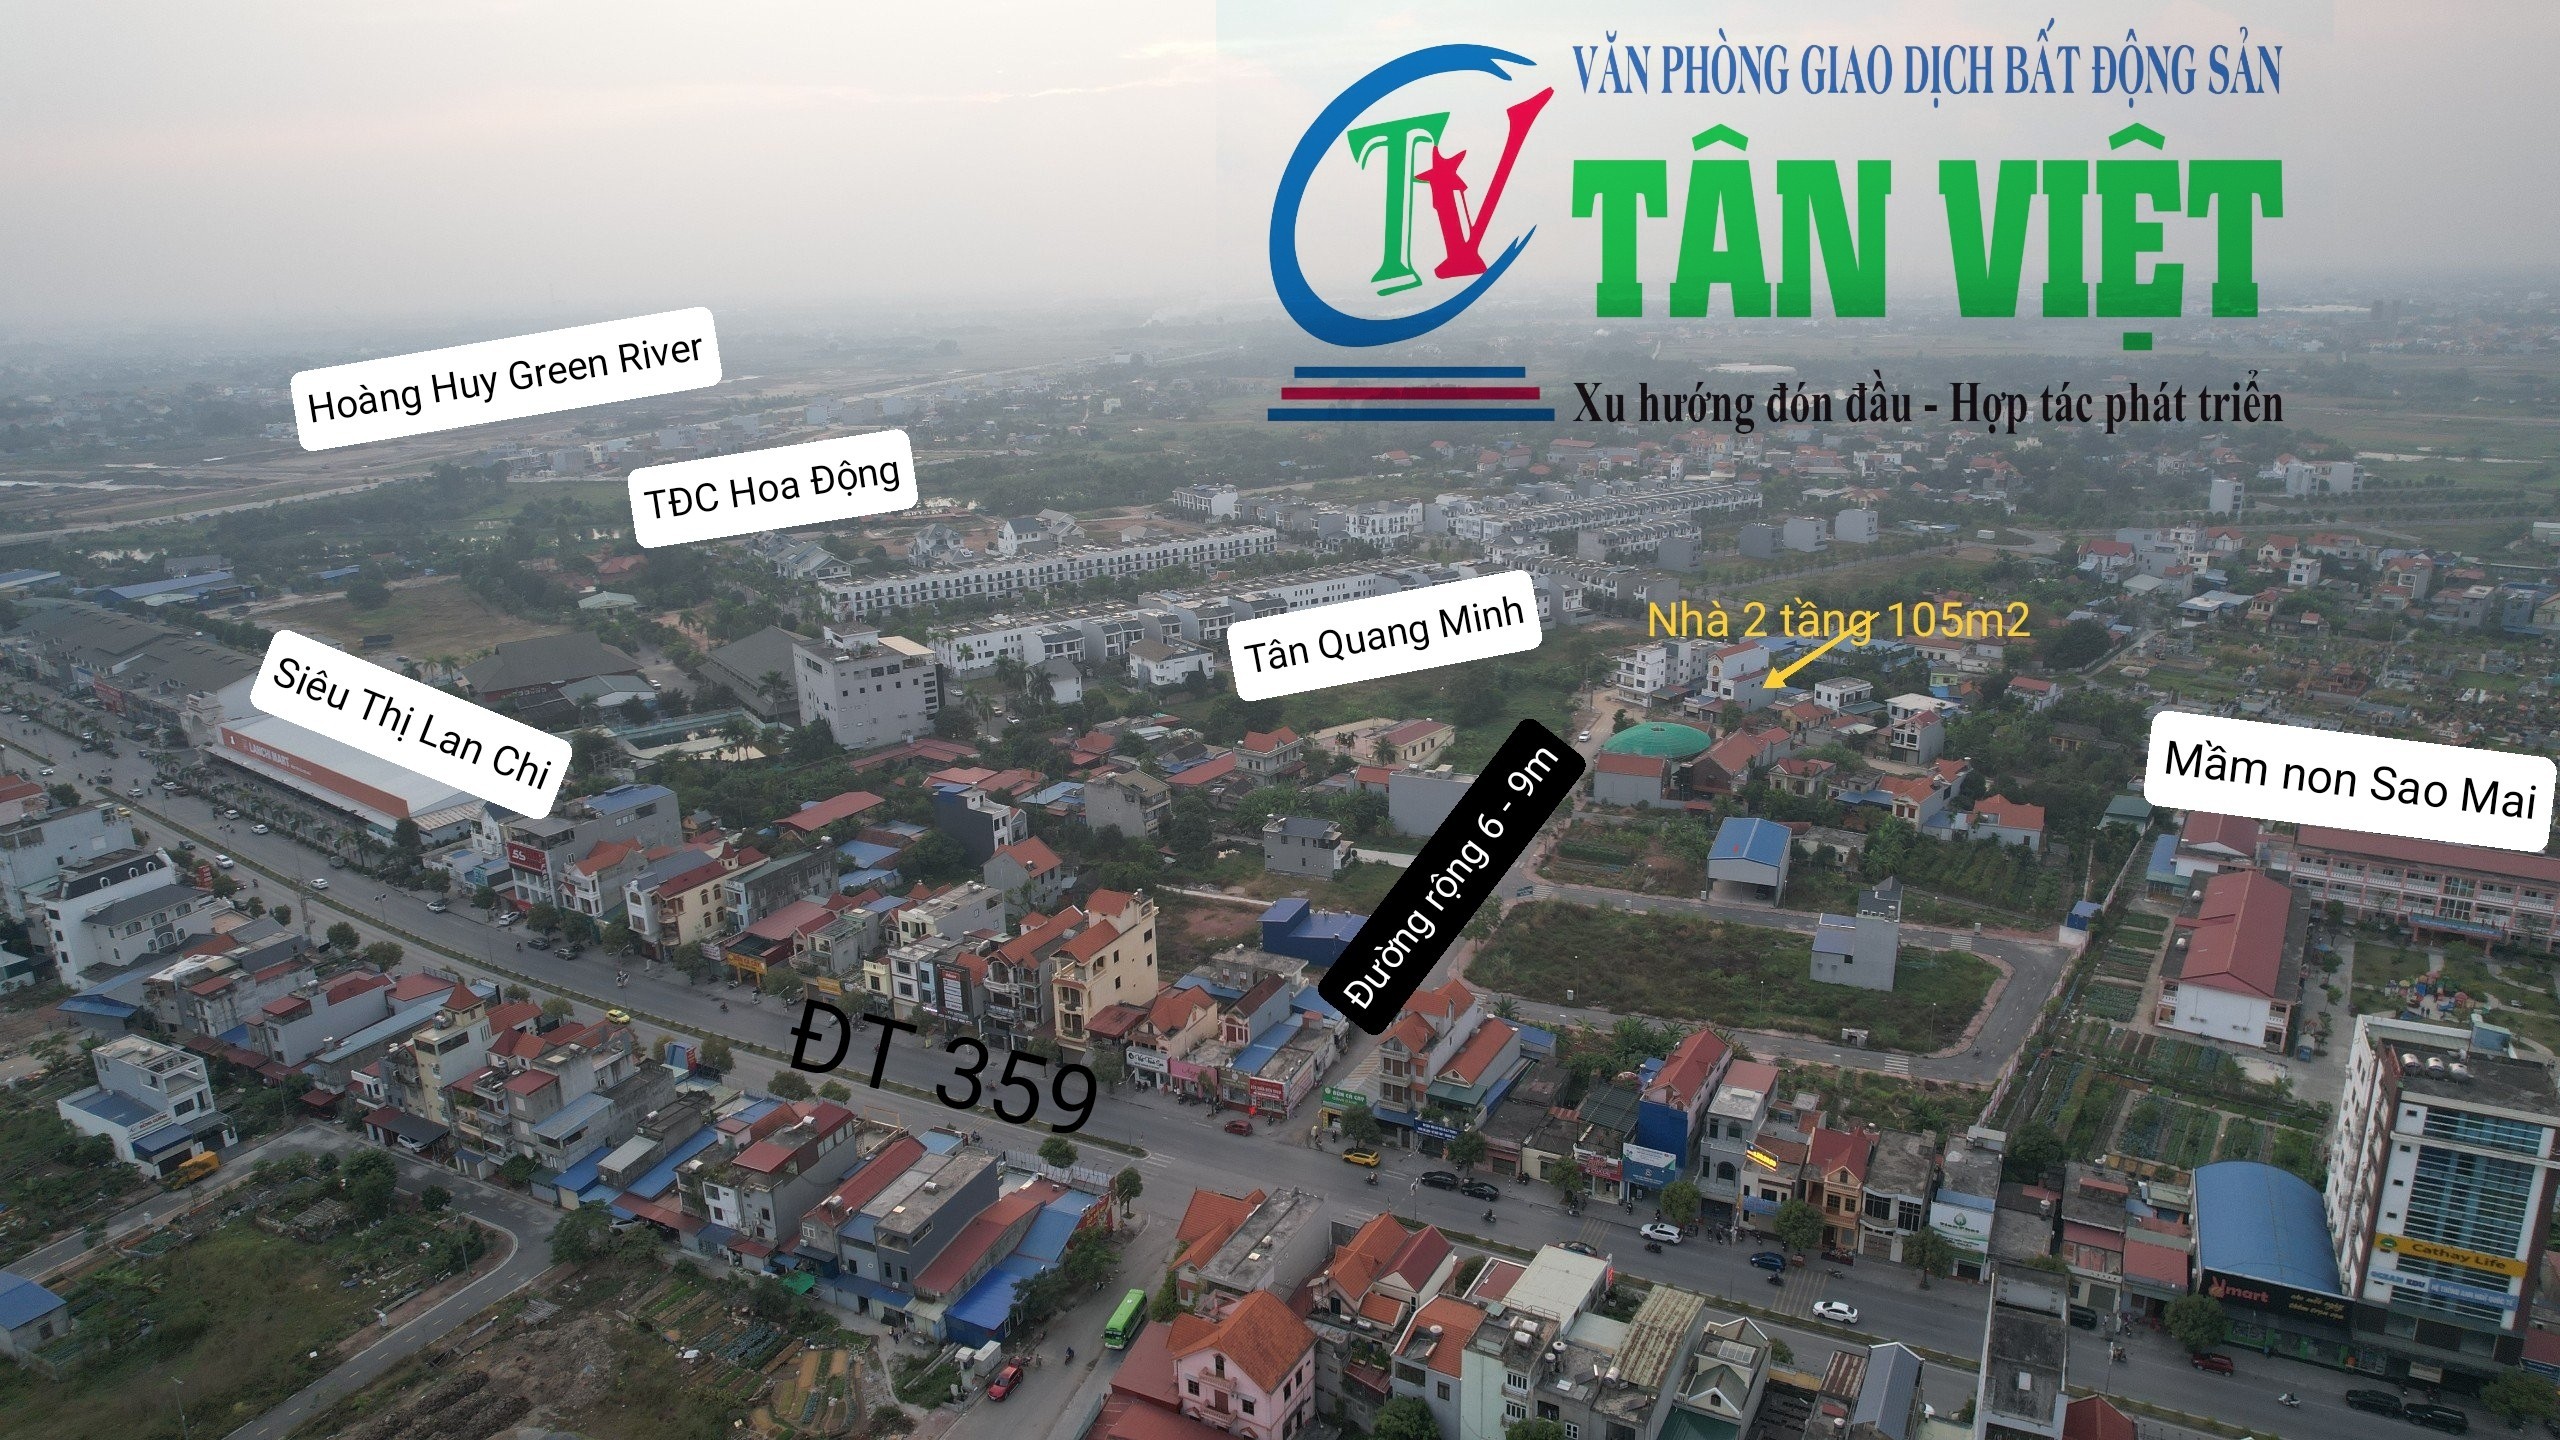 Cần bán Nhà mặt tiền đường 359, Xã Thủy Sơn, Diện tích 105m², Giá 3.5 Tỷ 3